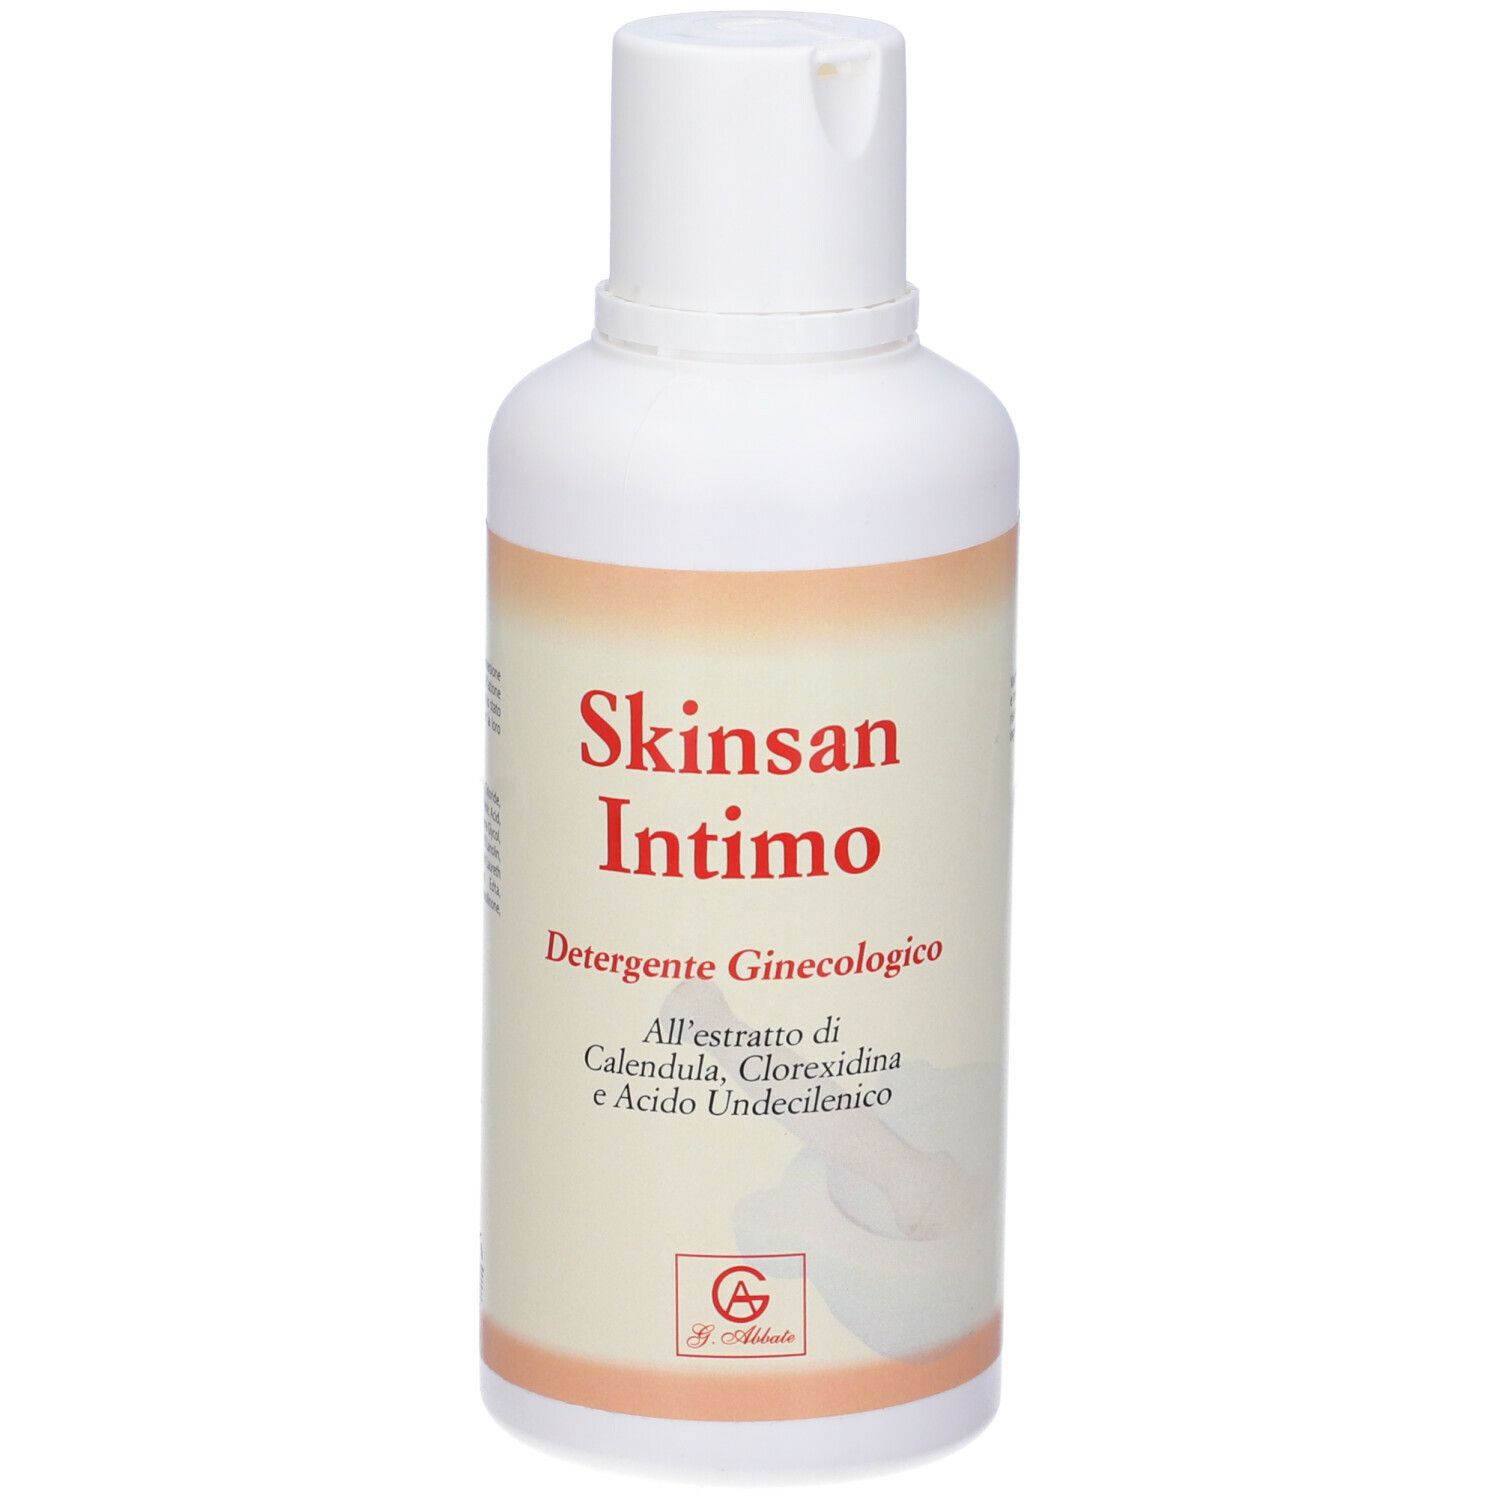 Image of Skinsan Intimo Detergente Intimo